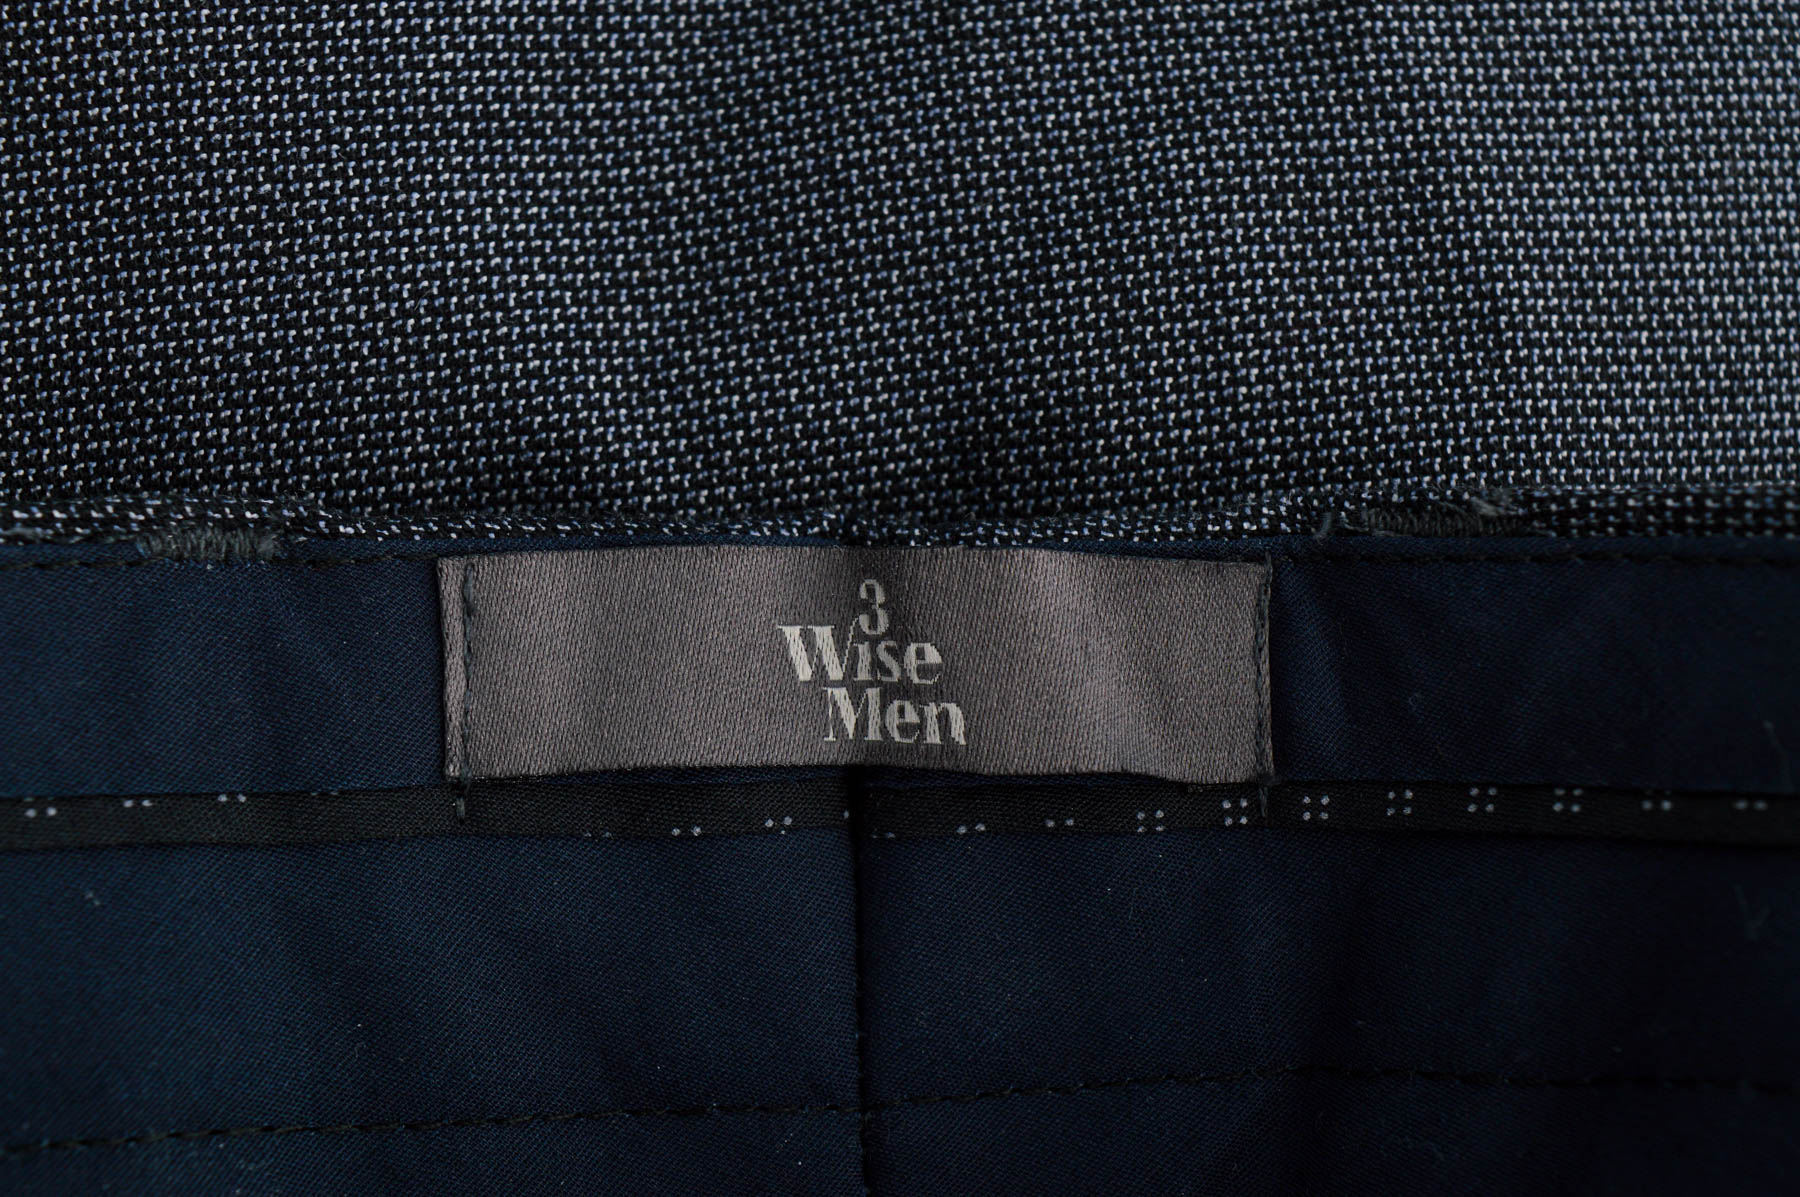 Men's trousers - 3 Wise Men - 2